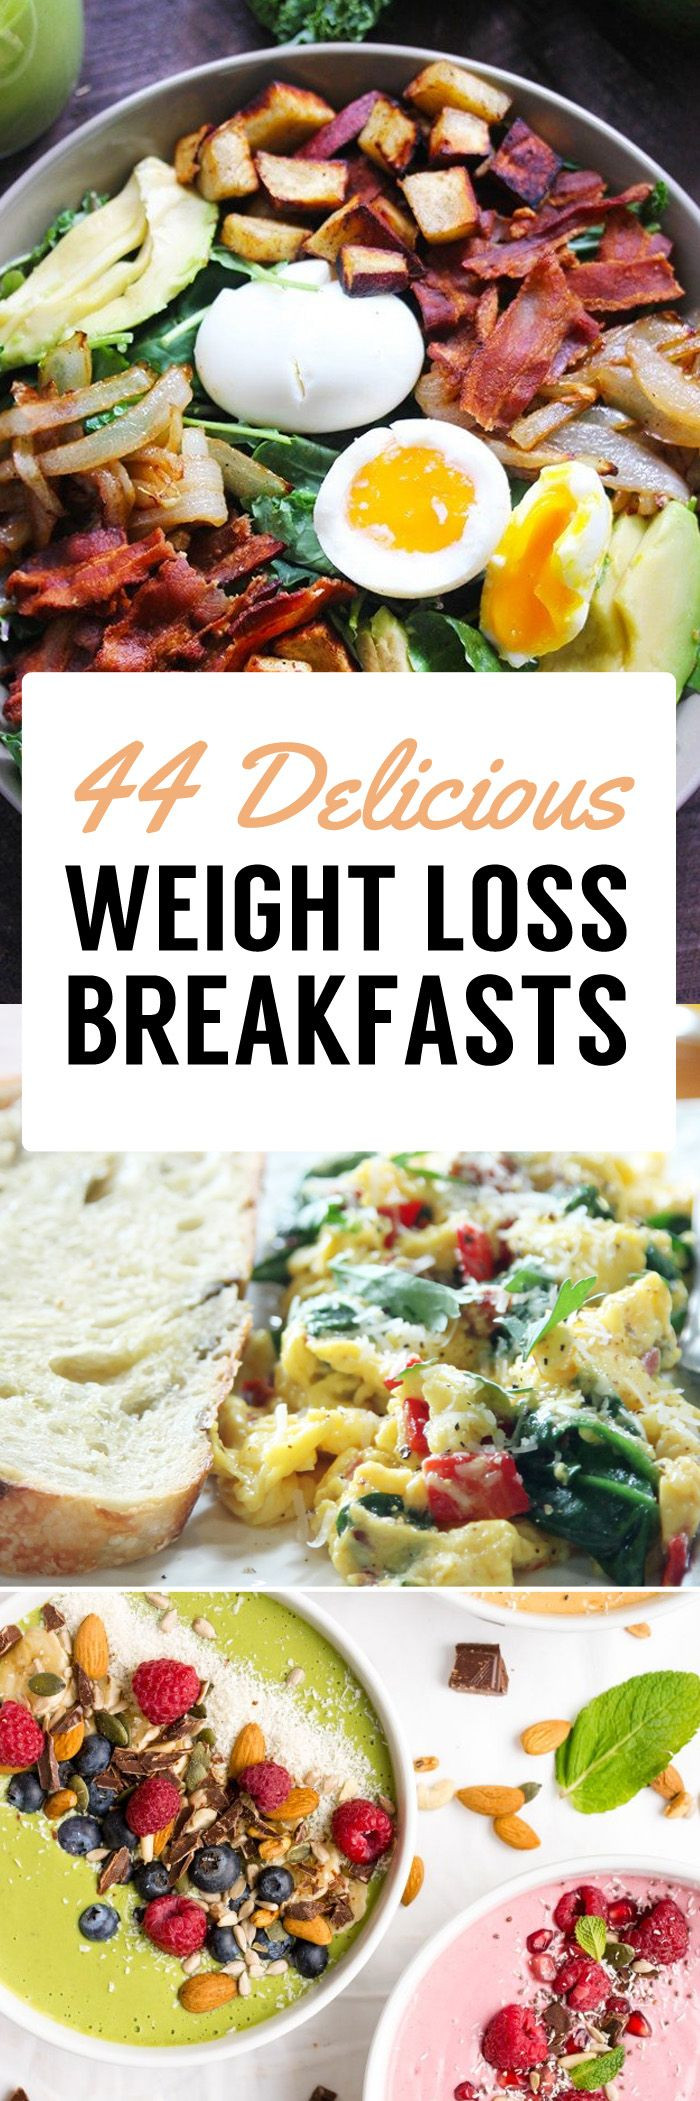 Healthy Weight Loss Breakfast
 Best 25 Healthy breakfasts ideas on Pinterest